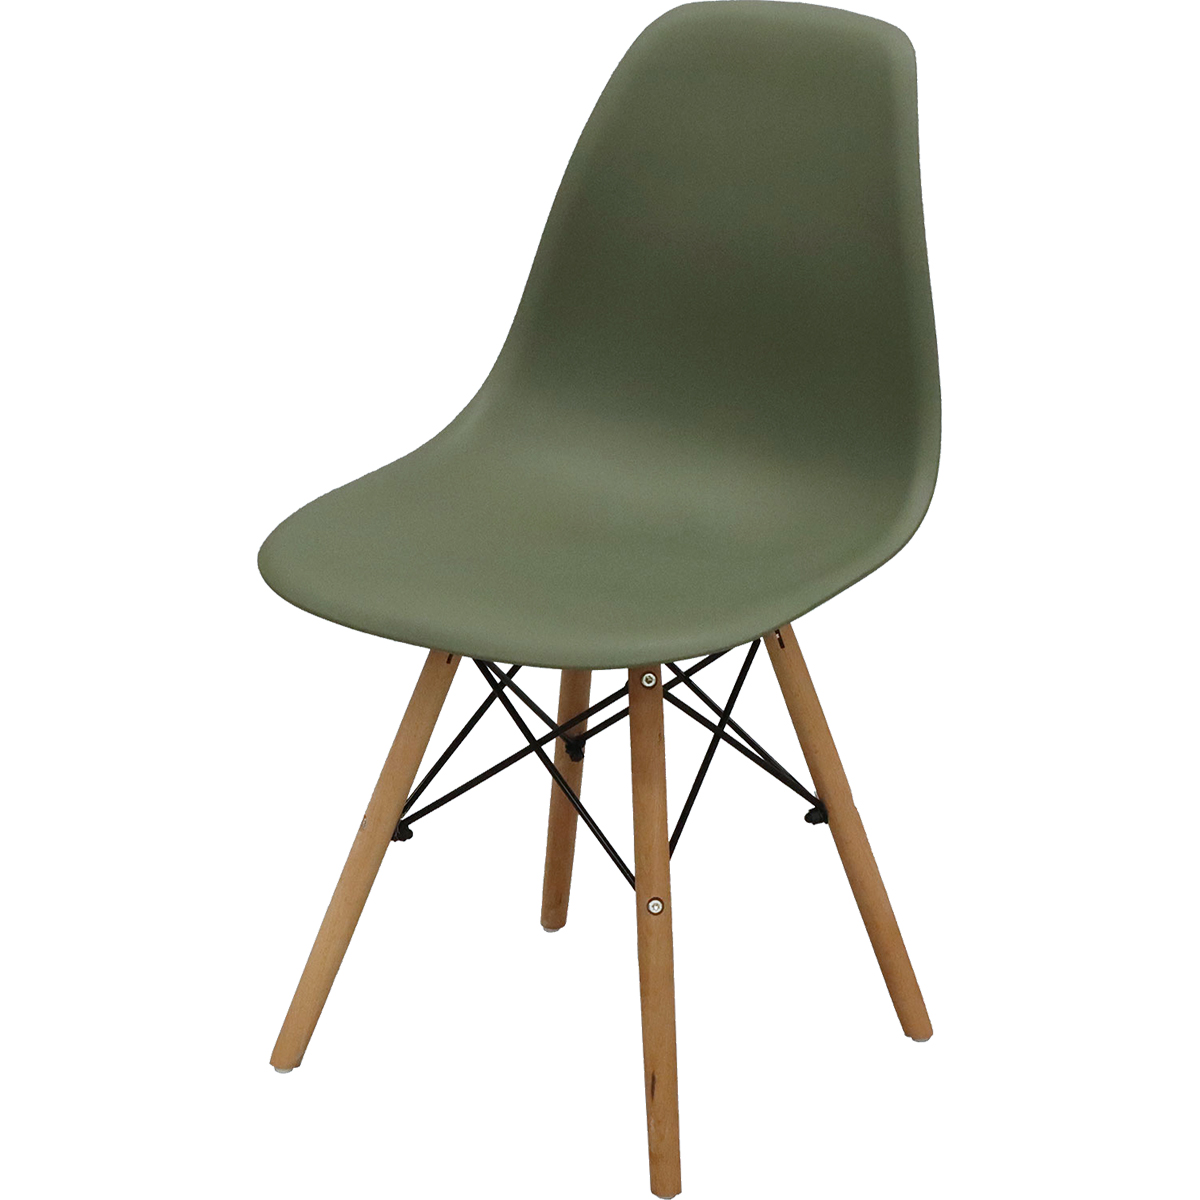 シェルチェア 4脚セット イームズ チェア デザイナーズ 白 黒 赤 緑 おしゃれ 送料無料 新築祝い デザイナー 北欧 椅子 シェルチェア×4脚セット